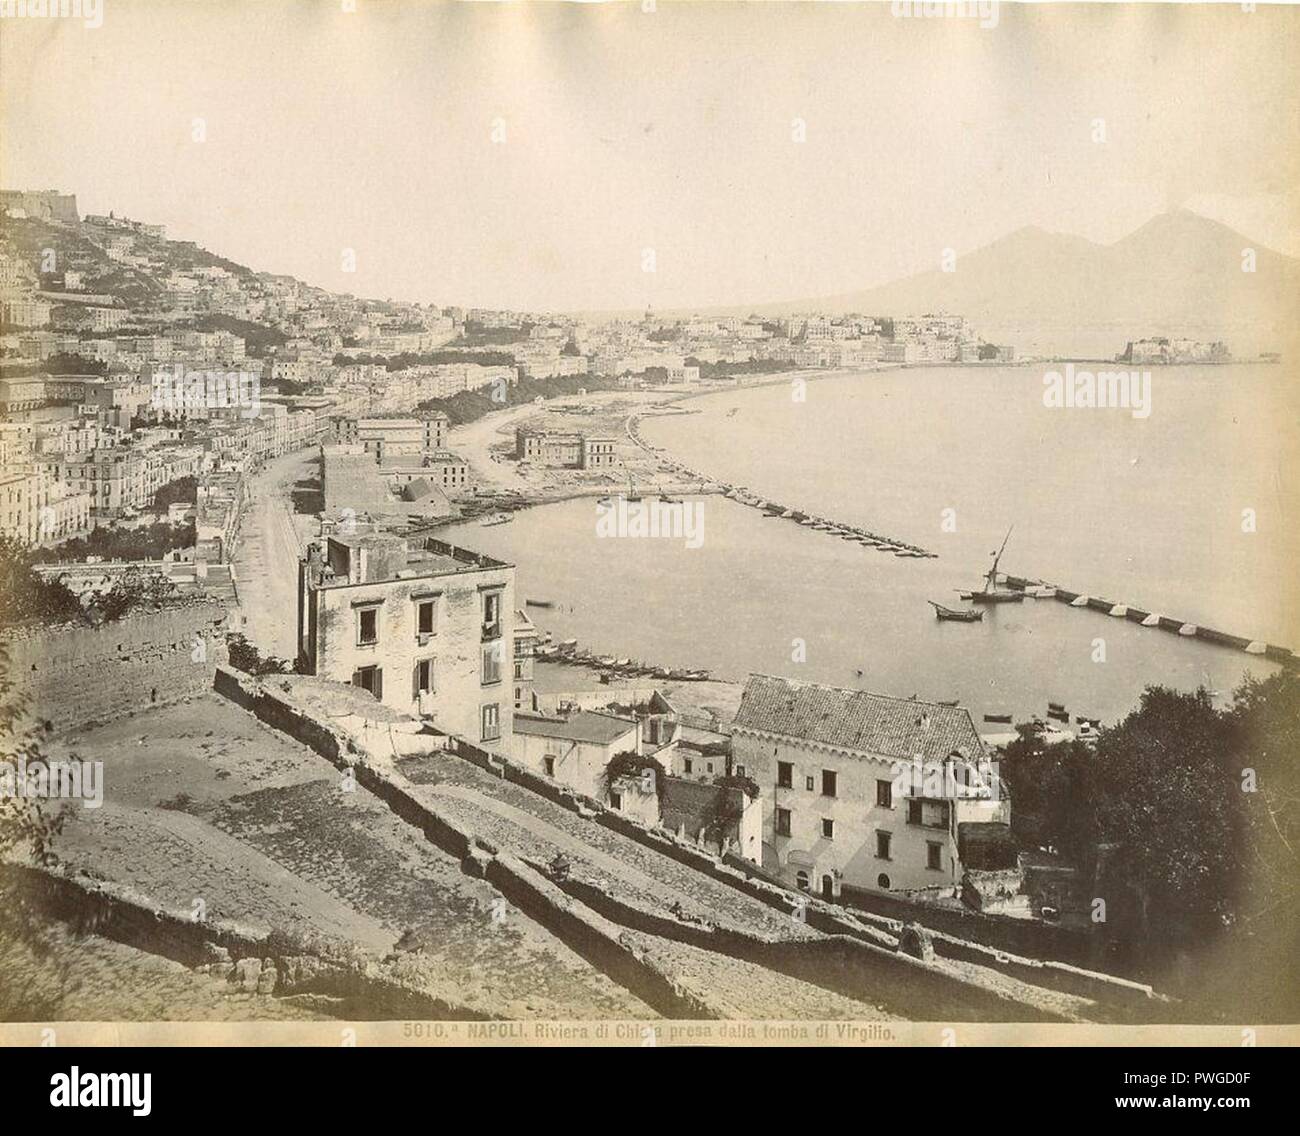 Brogi, Giacomo (1822-1881) - n. 5010a - Napoli - Riviera di Chiaia dalla tomba di Virgilio. Stock Photo